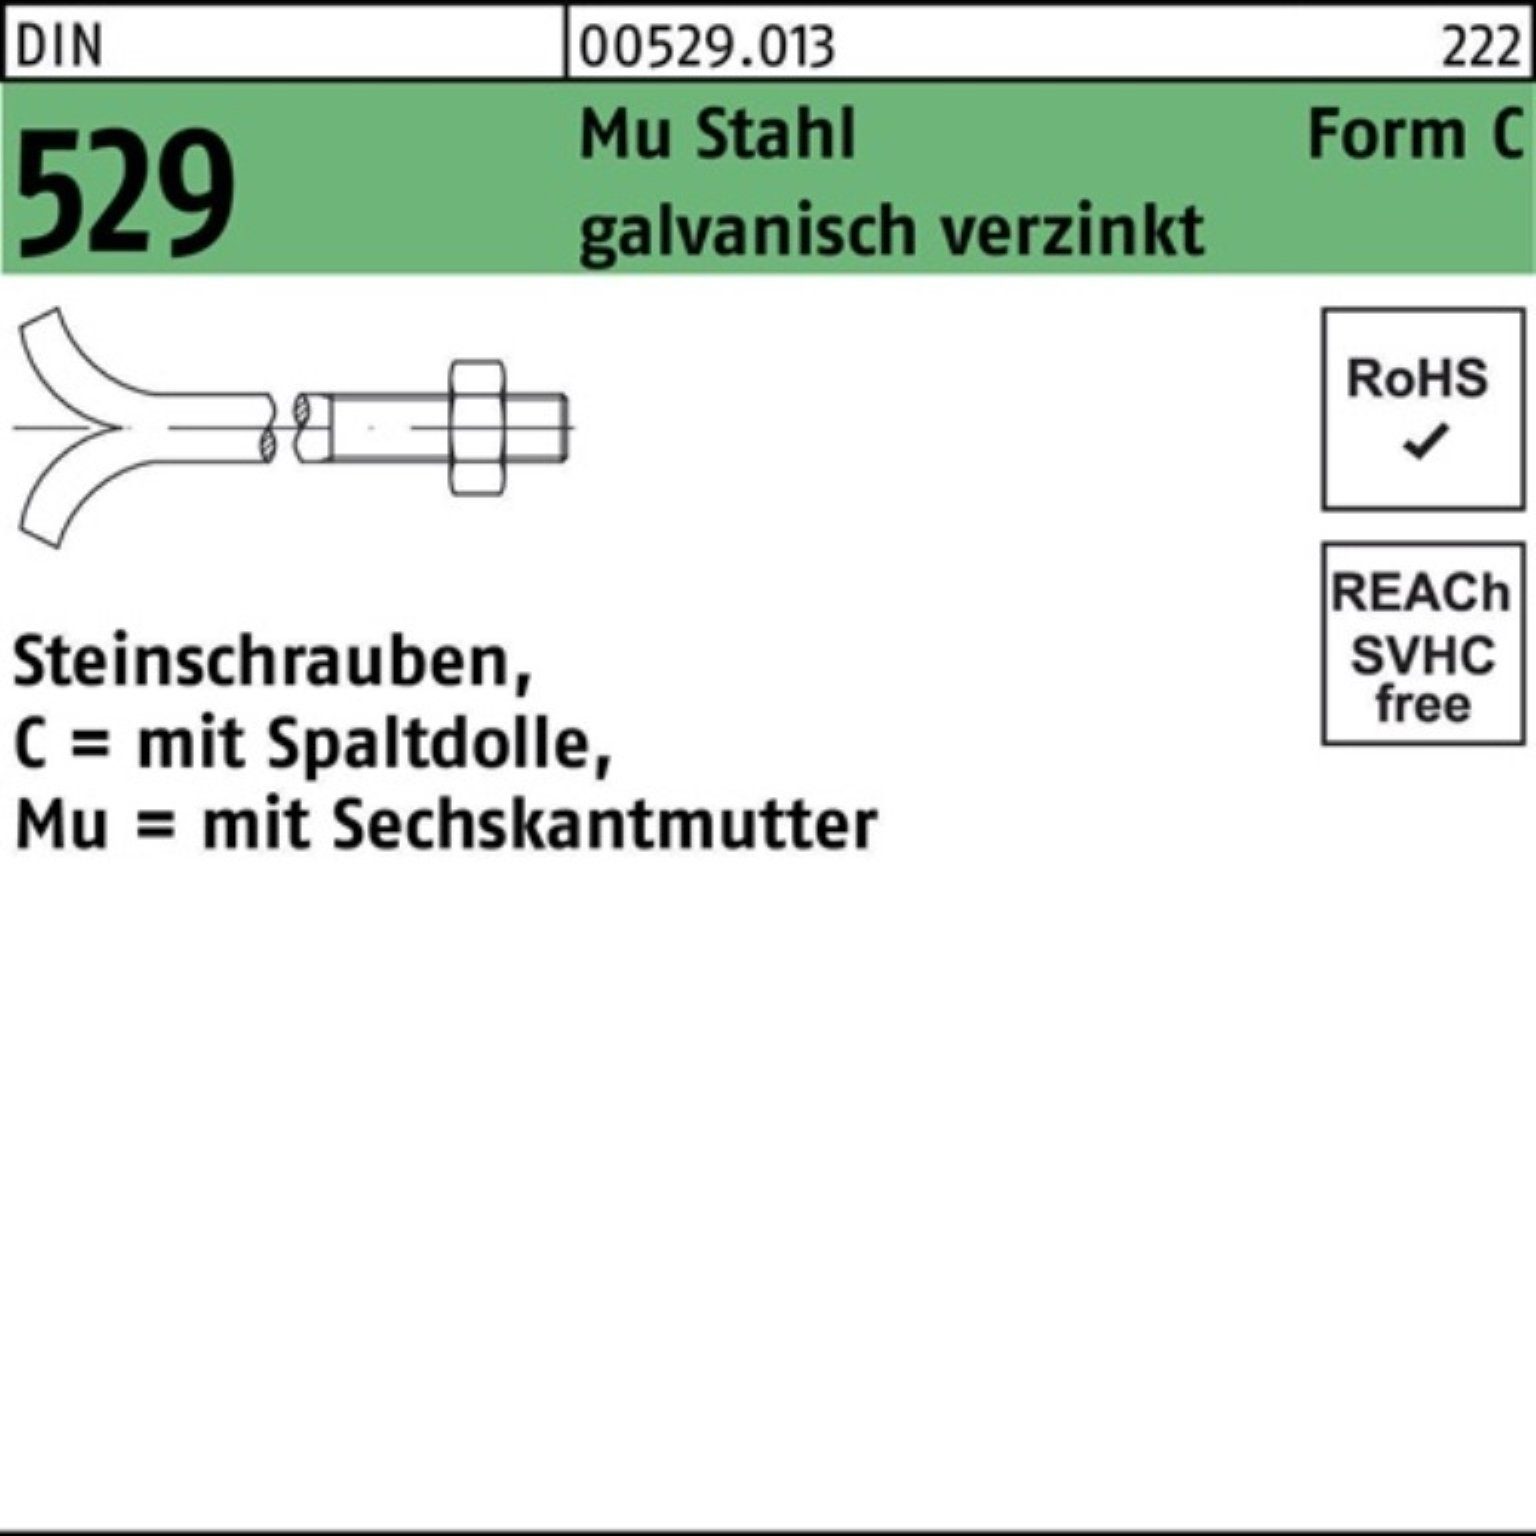 Reyher Schraube 529 3. Steinschraube 100er 30x500 CM Spaltdolle/6-ktmutter Mu DIN Pack